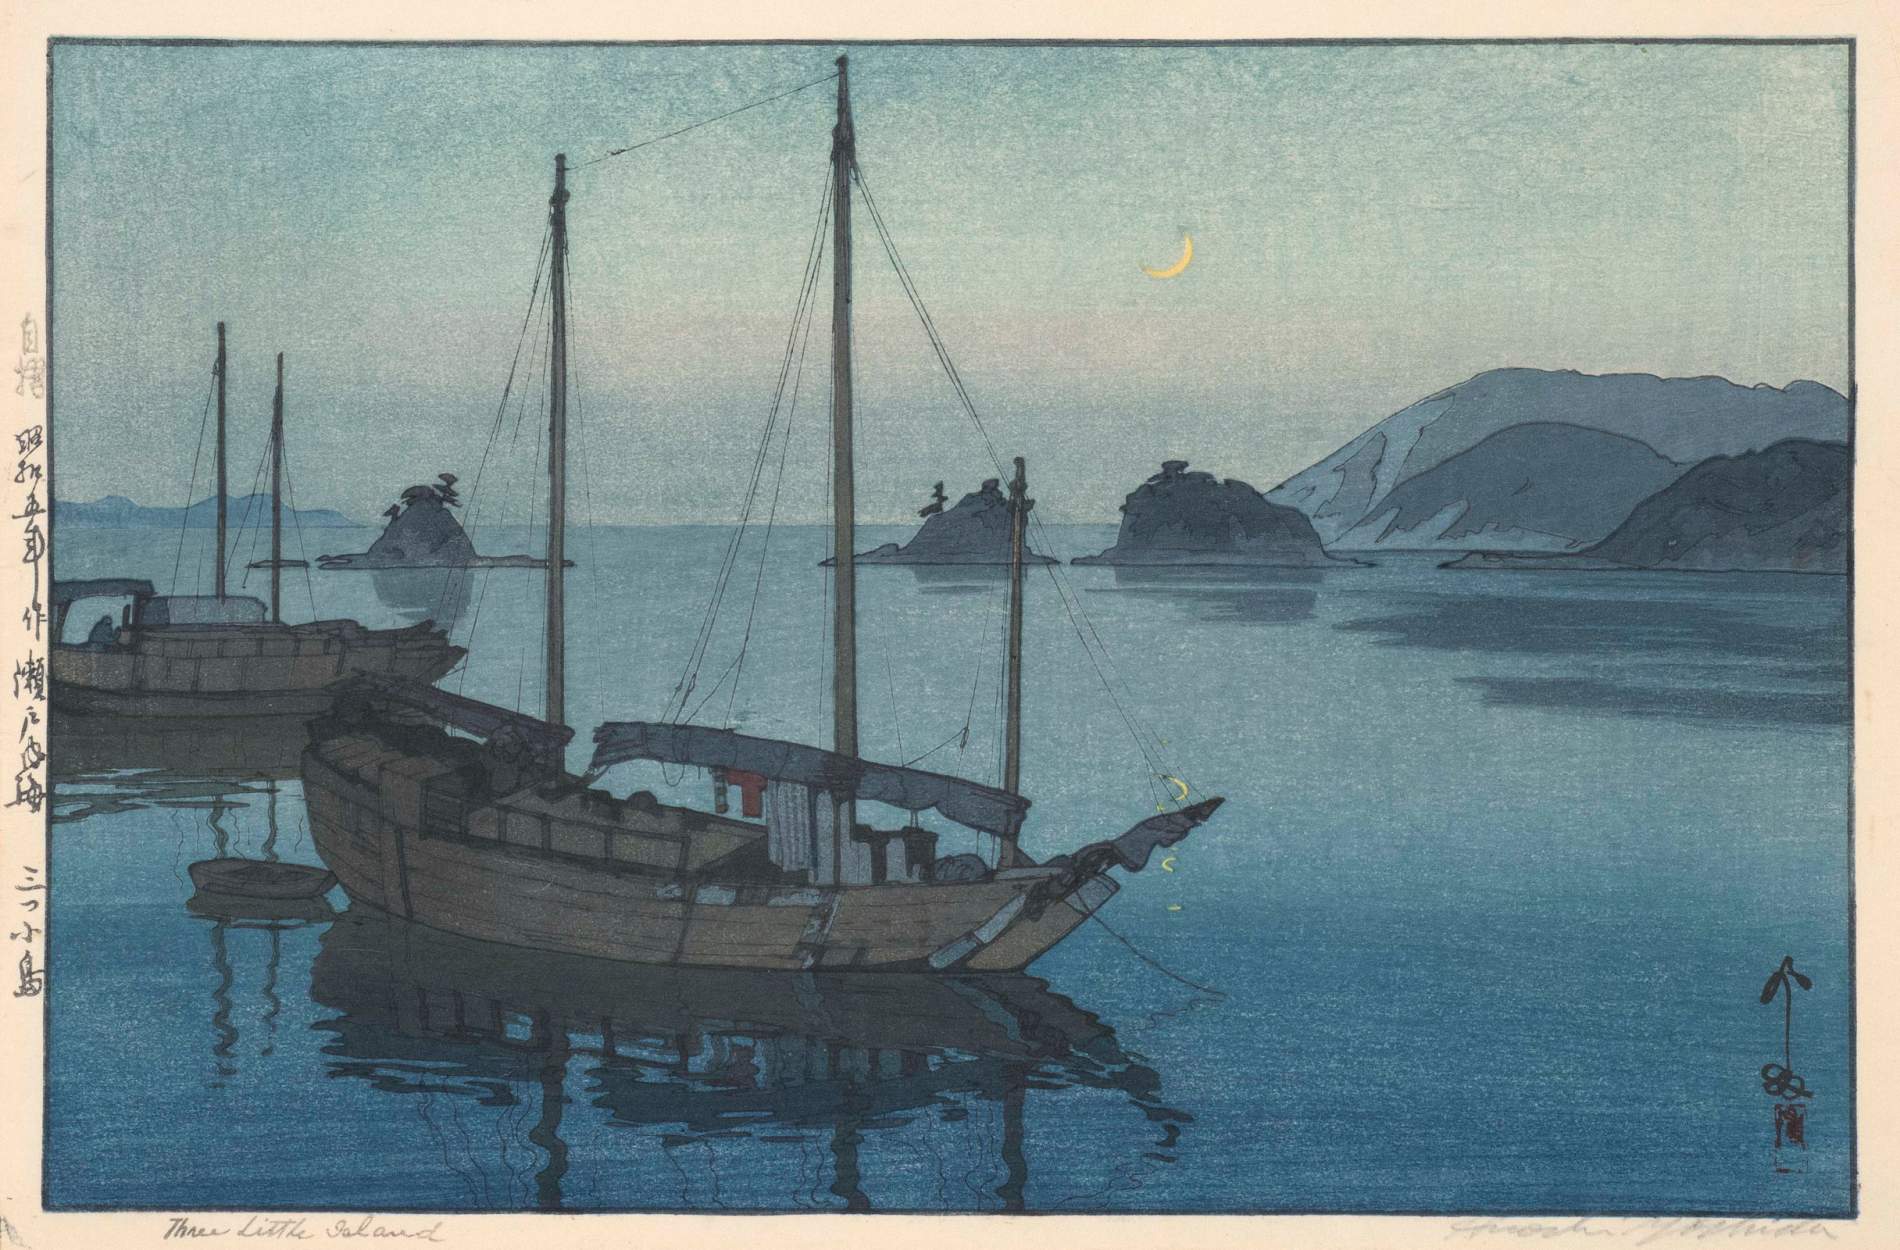 Hiroshi Yoshida “Three Little Islands” 1930 woodblock print